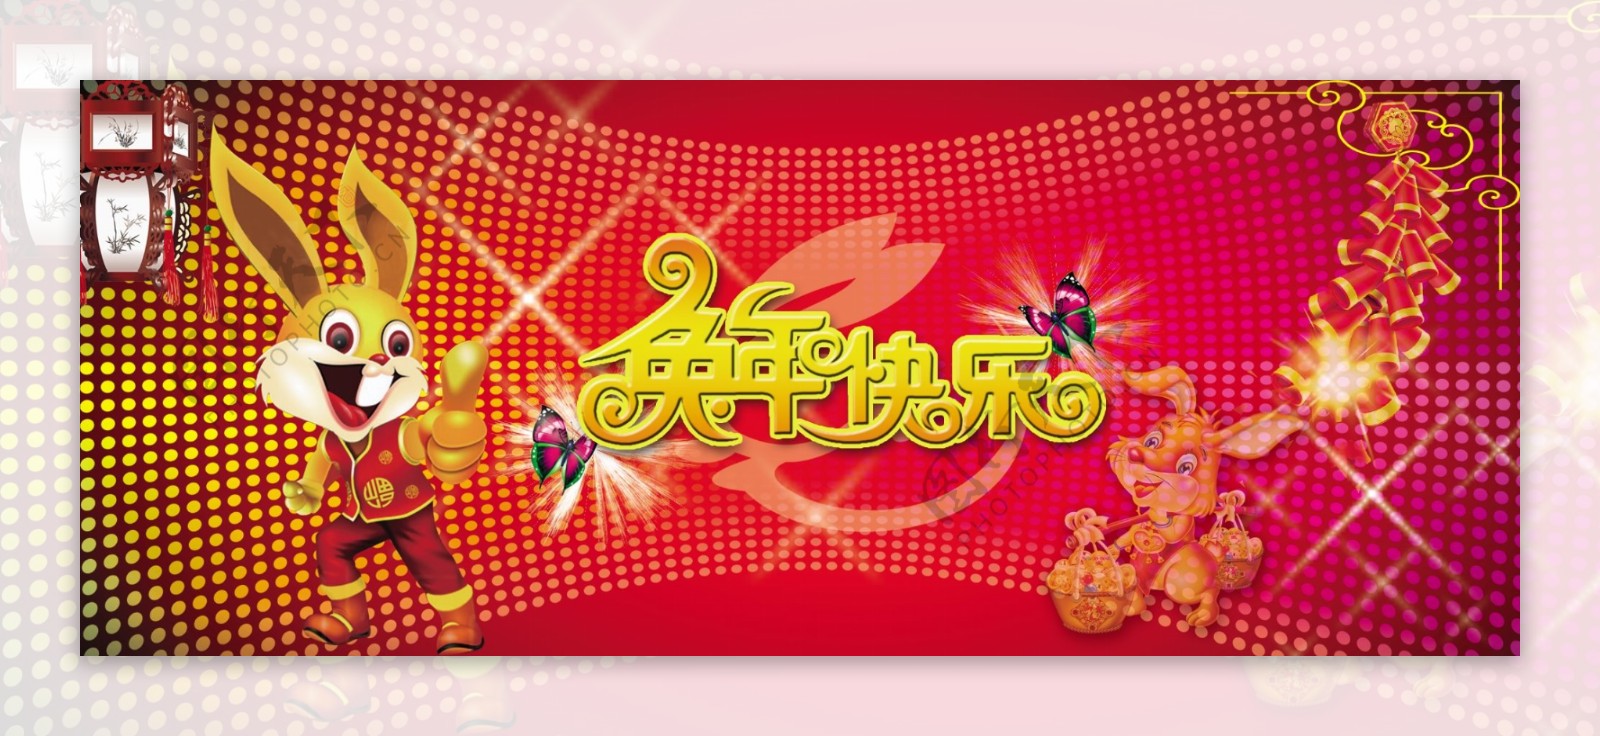 红色背景喜庆新年节日元素